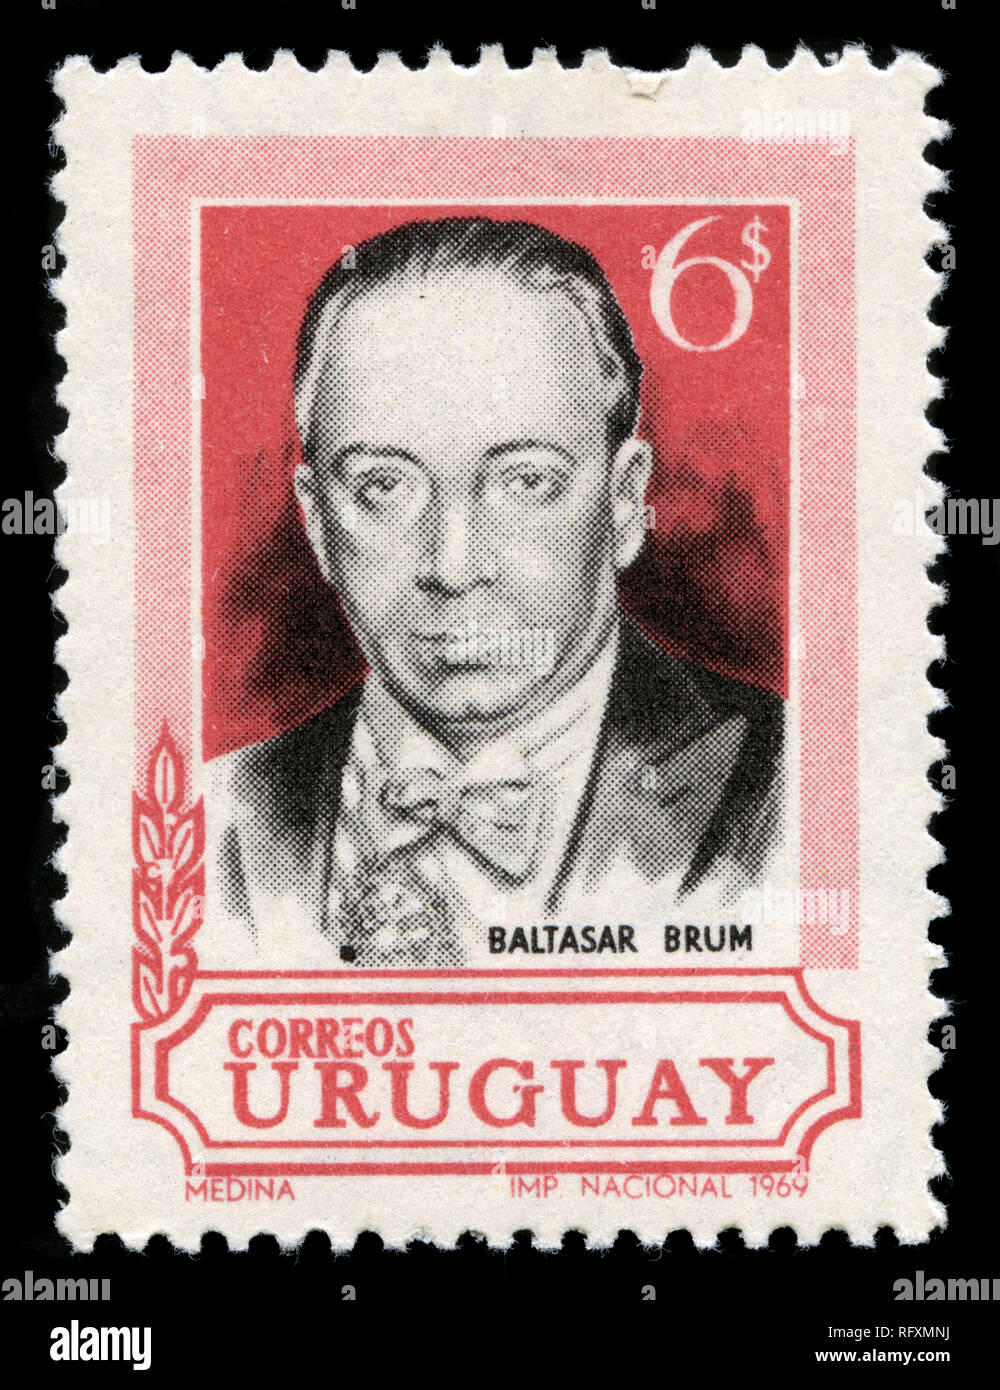 Briefmarke aus Uruguay in der Präsident Baltasar Brum Gedenken Serie 1969 ausgestellt Stockfoto